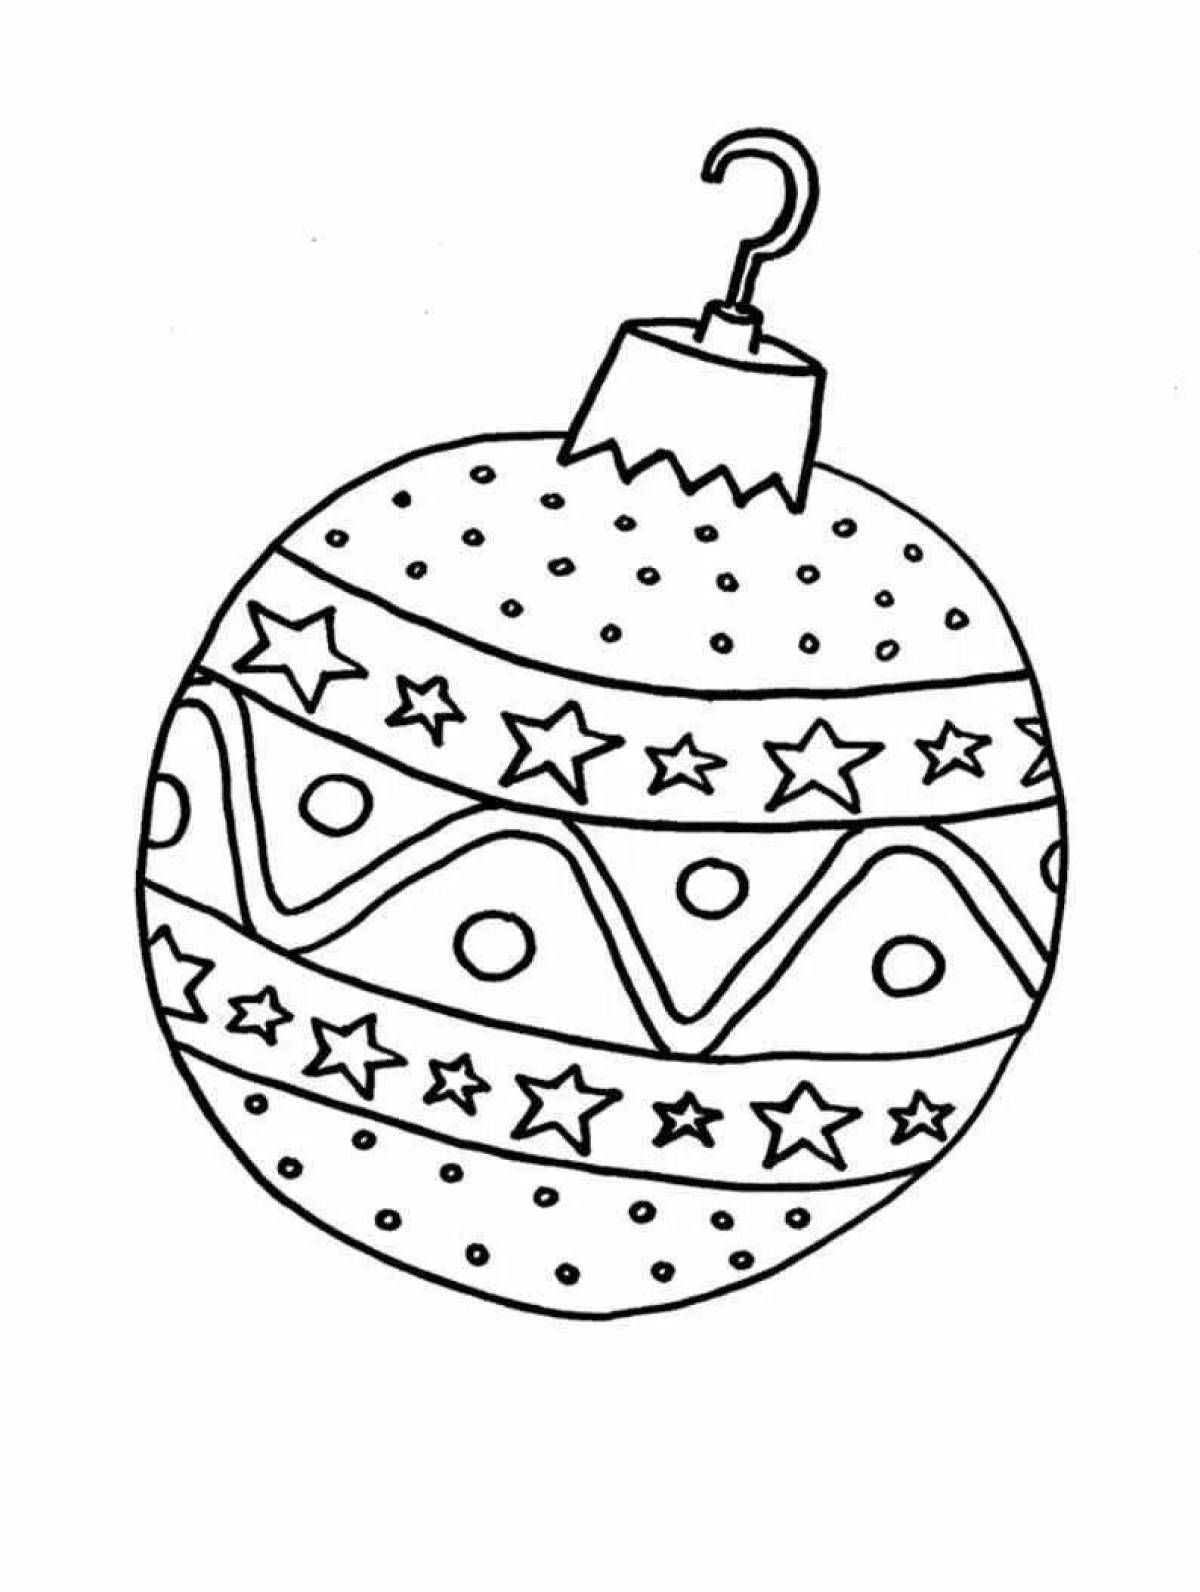 Christmas ball coloring page